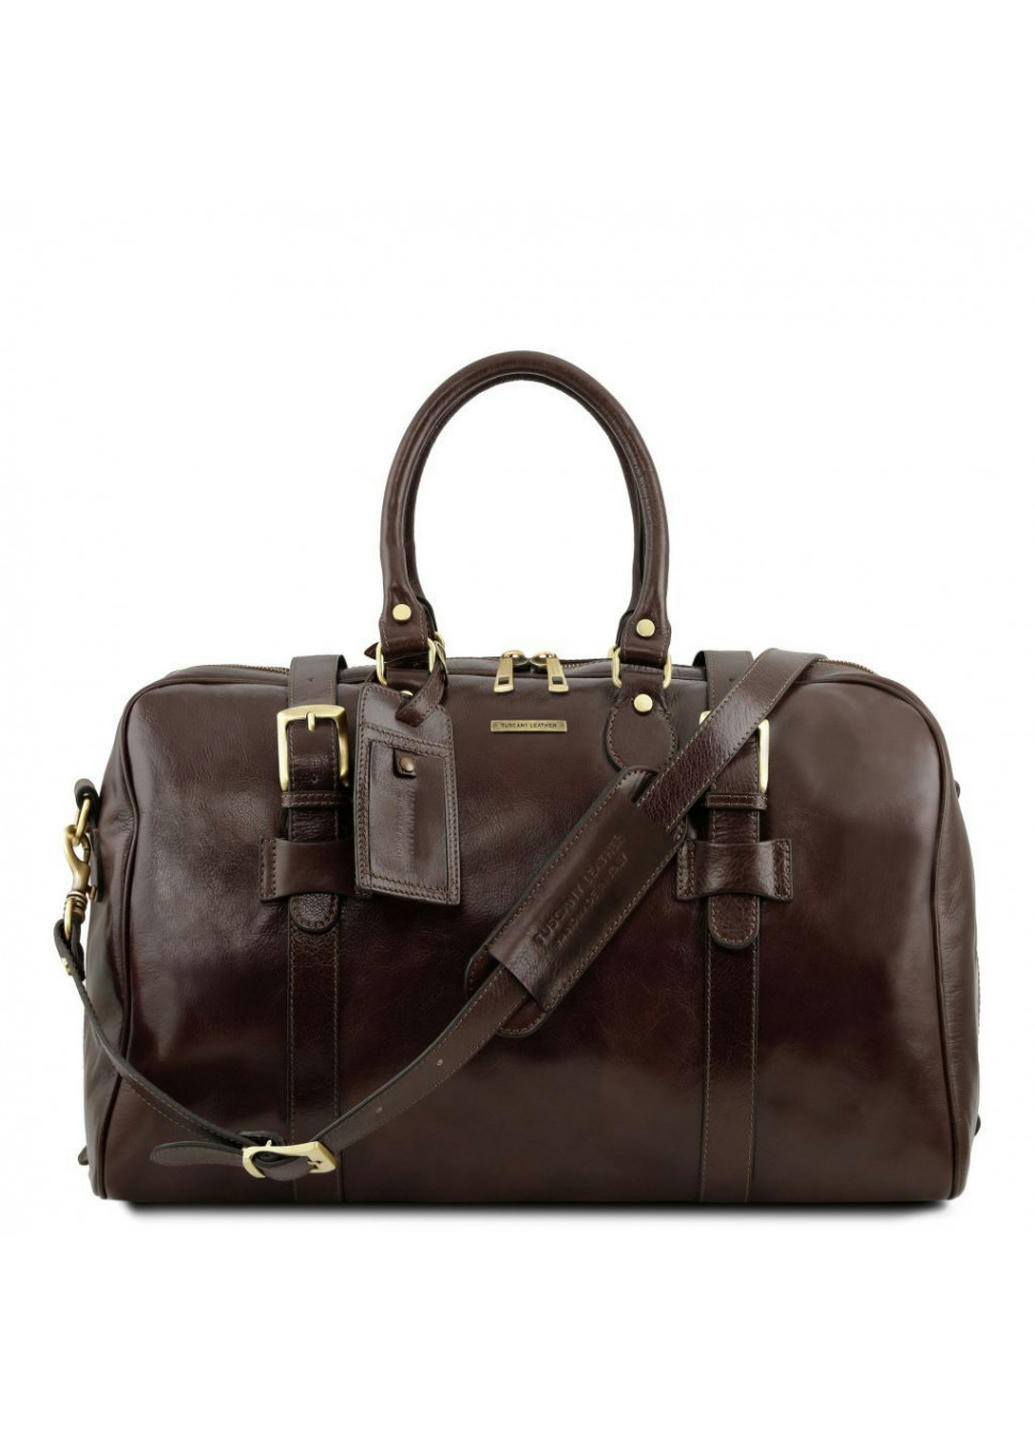 Шкіряна сумка з пряжками - Малий розмір Tuscany TL141249 Voyager (Темно-коричневий) Tuscany Leather (257657391)